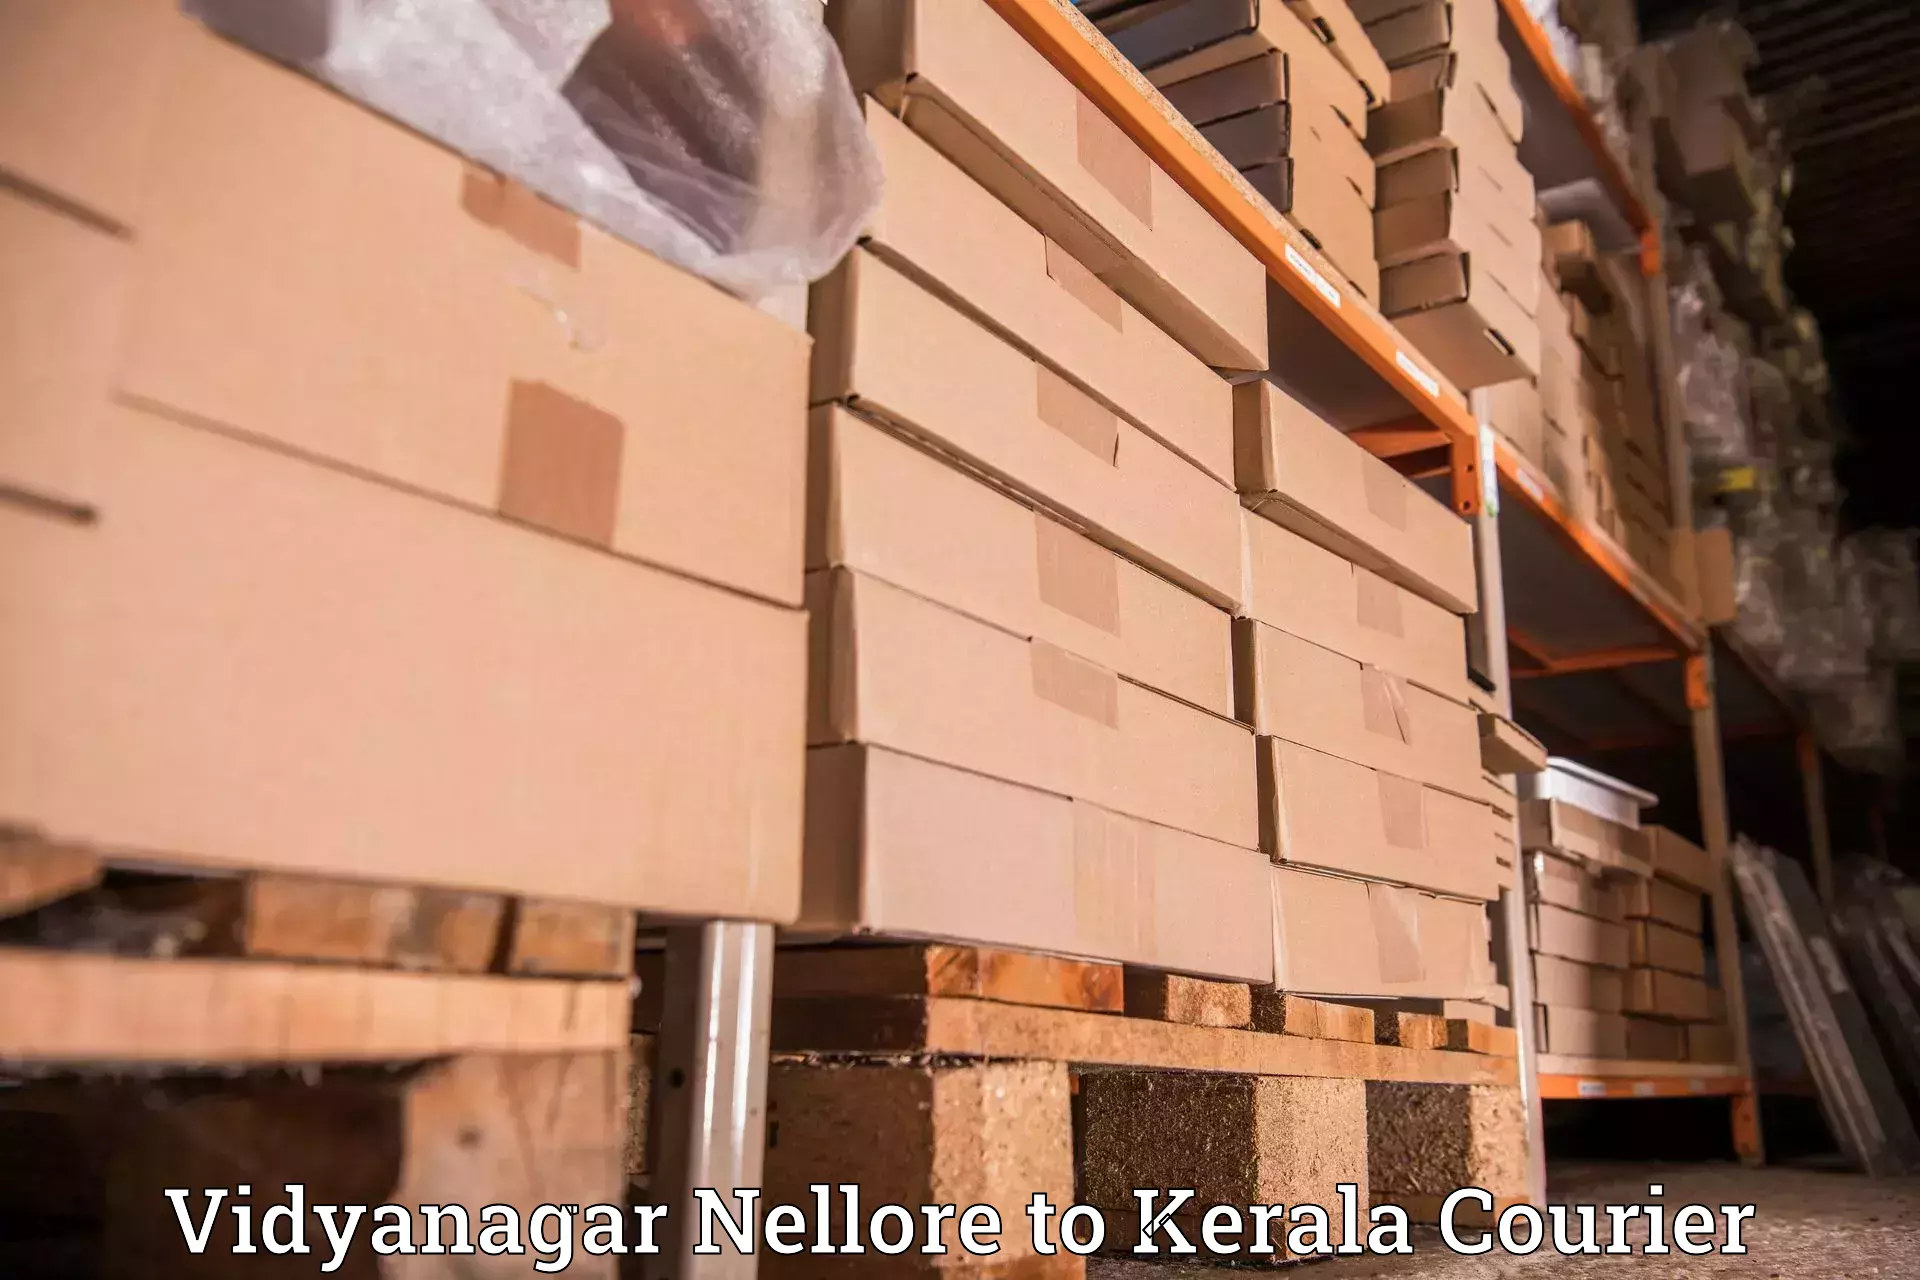 Next-generation courier services Vidyanagar Nellore to Kanjiramattom